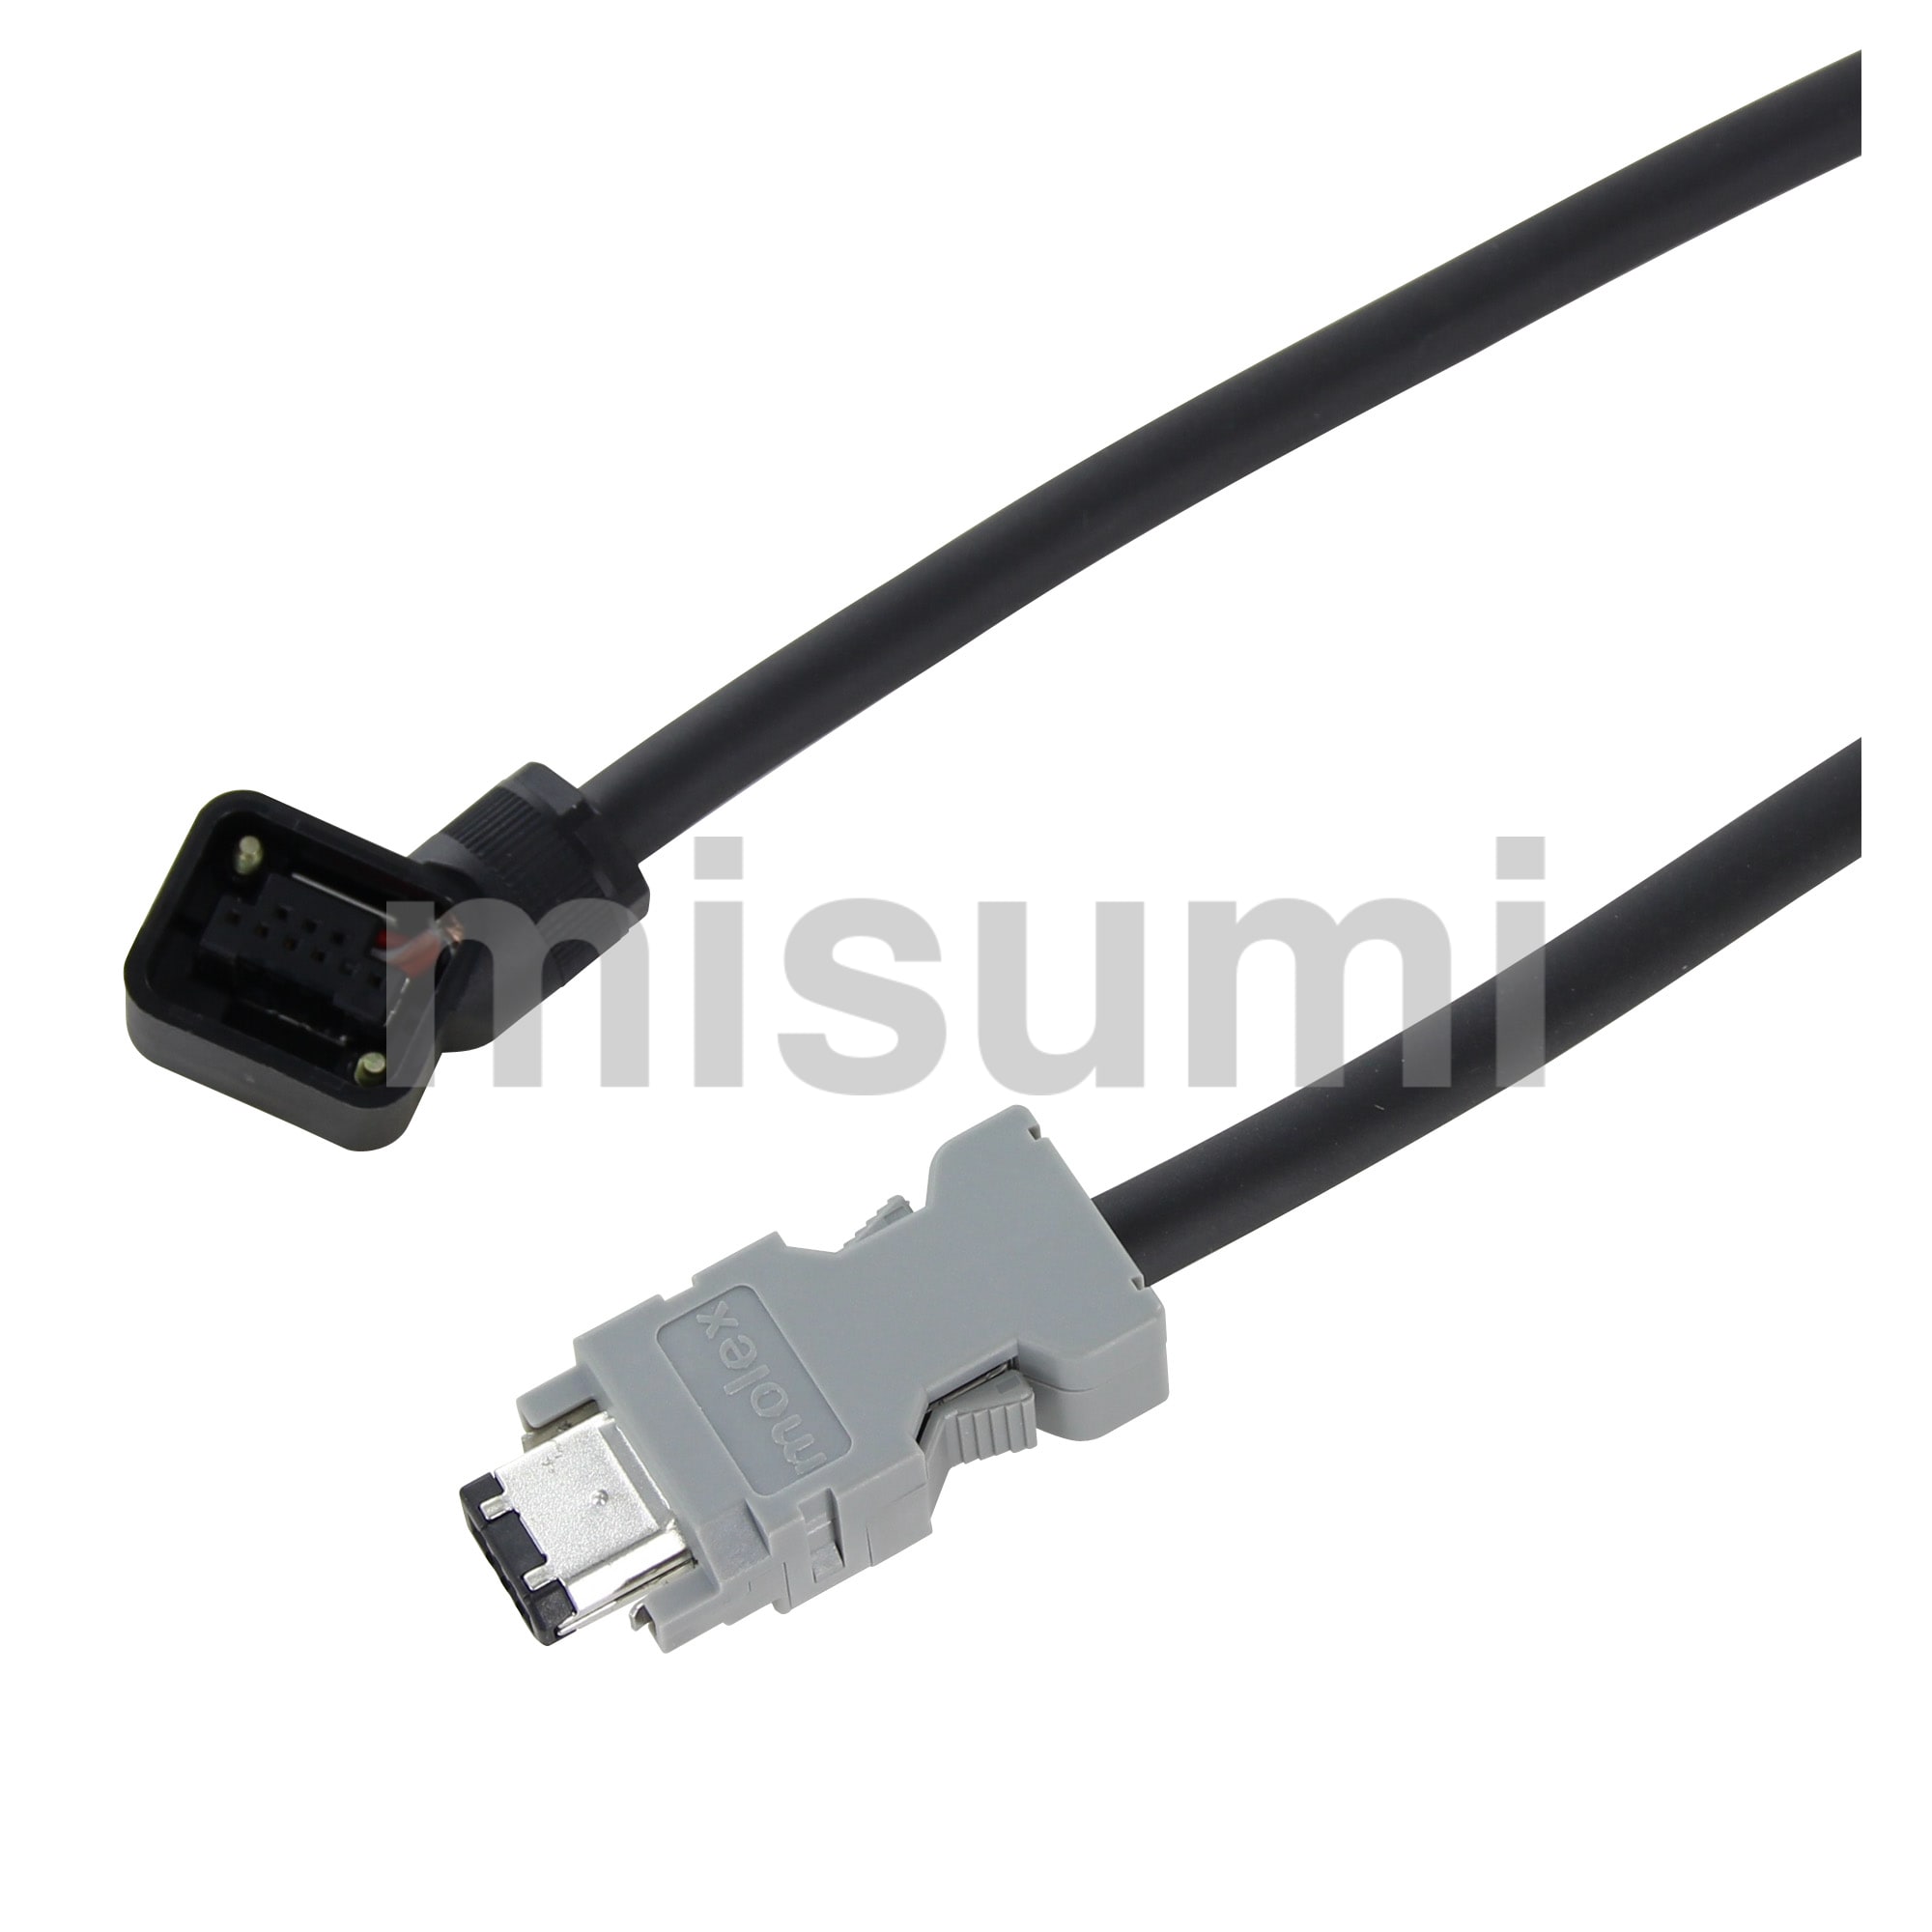 ΣVシリーズ対応 USB パソコン接続ケーブル 安川電機 MISUMI(ミスミ)